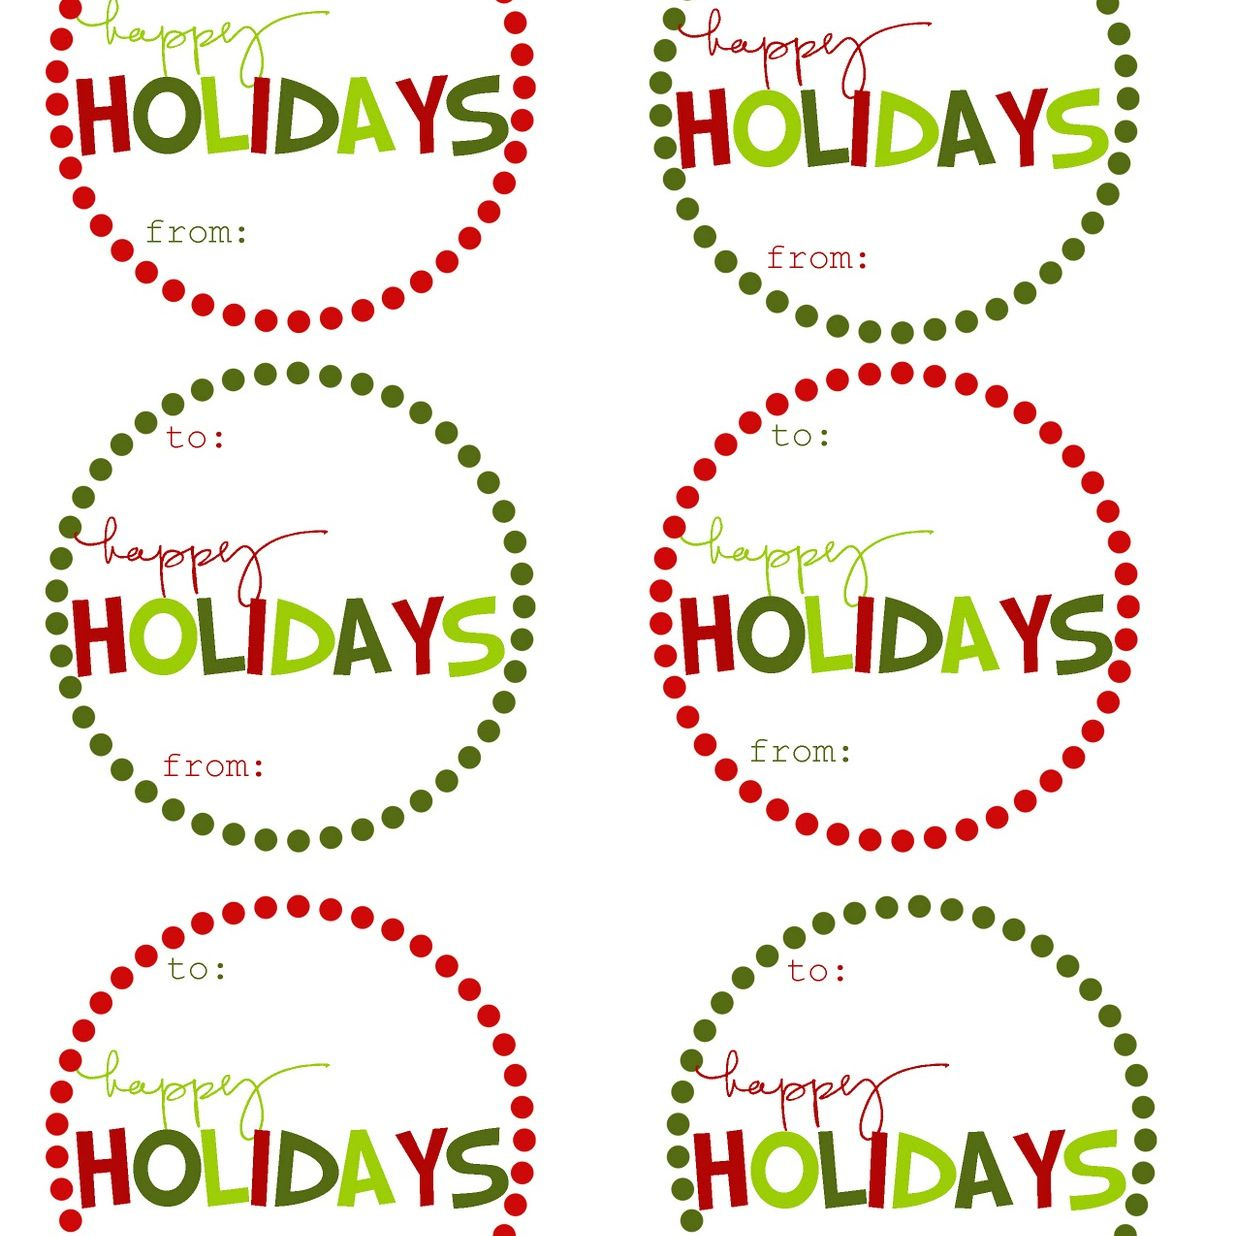 40 Sets Of Free Printable Christmas Gift Tags - Printable Gift Tags Customized Free